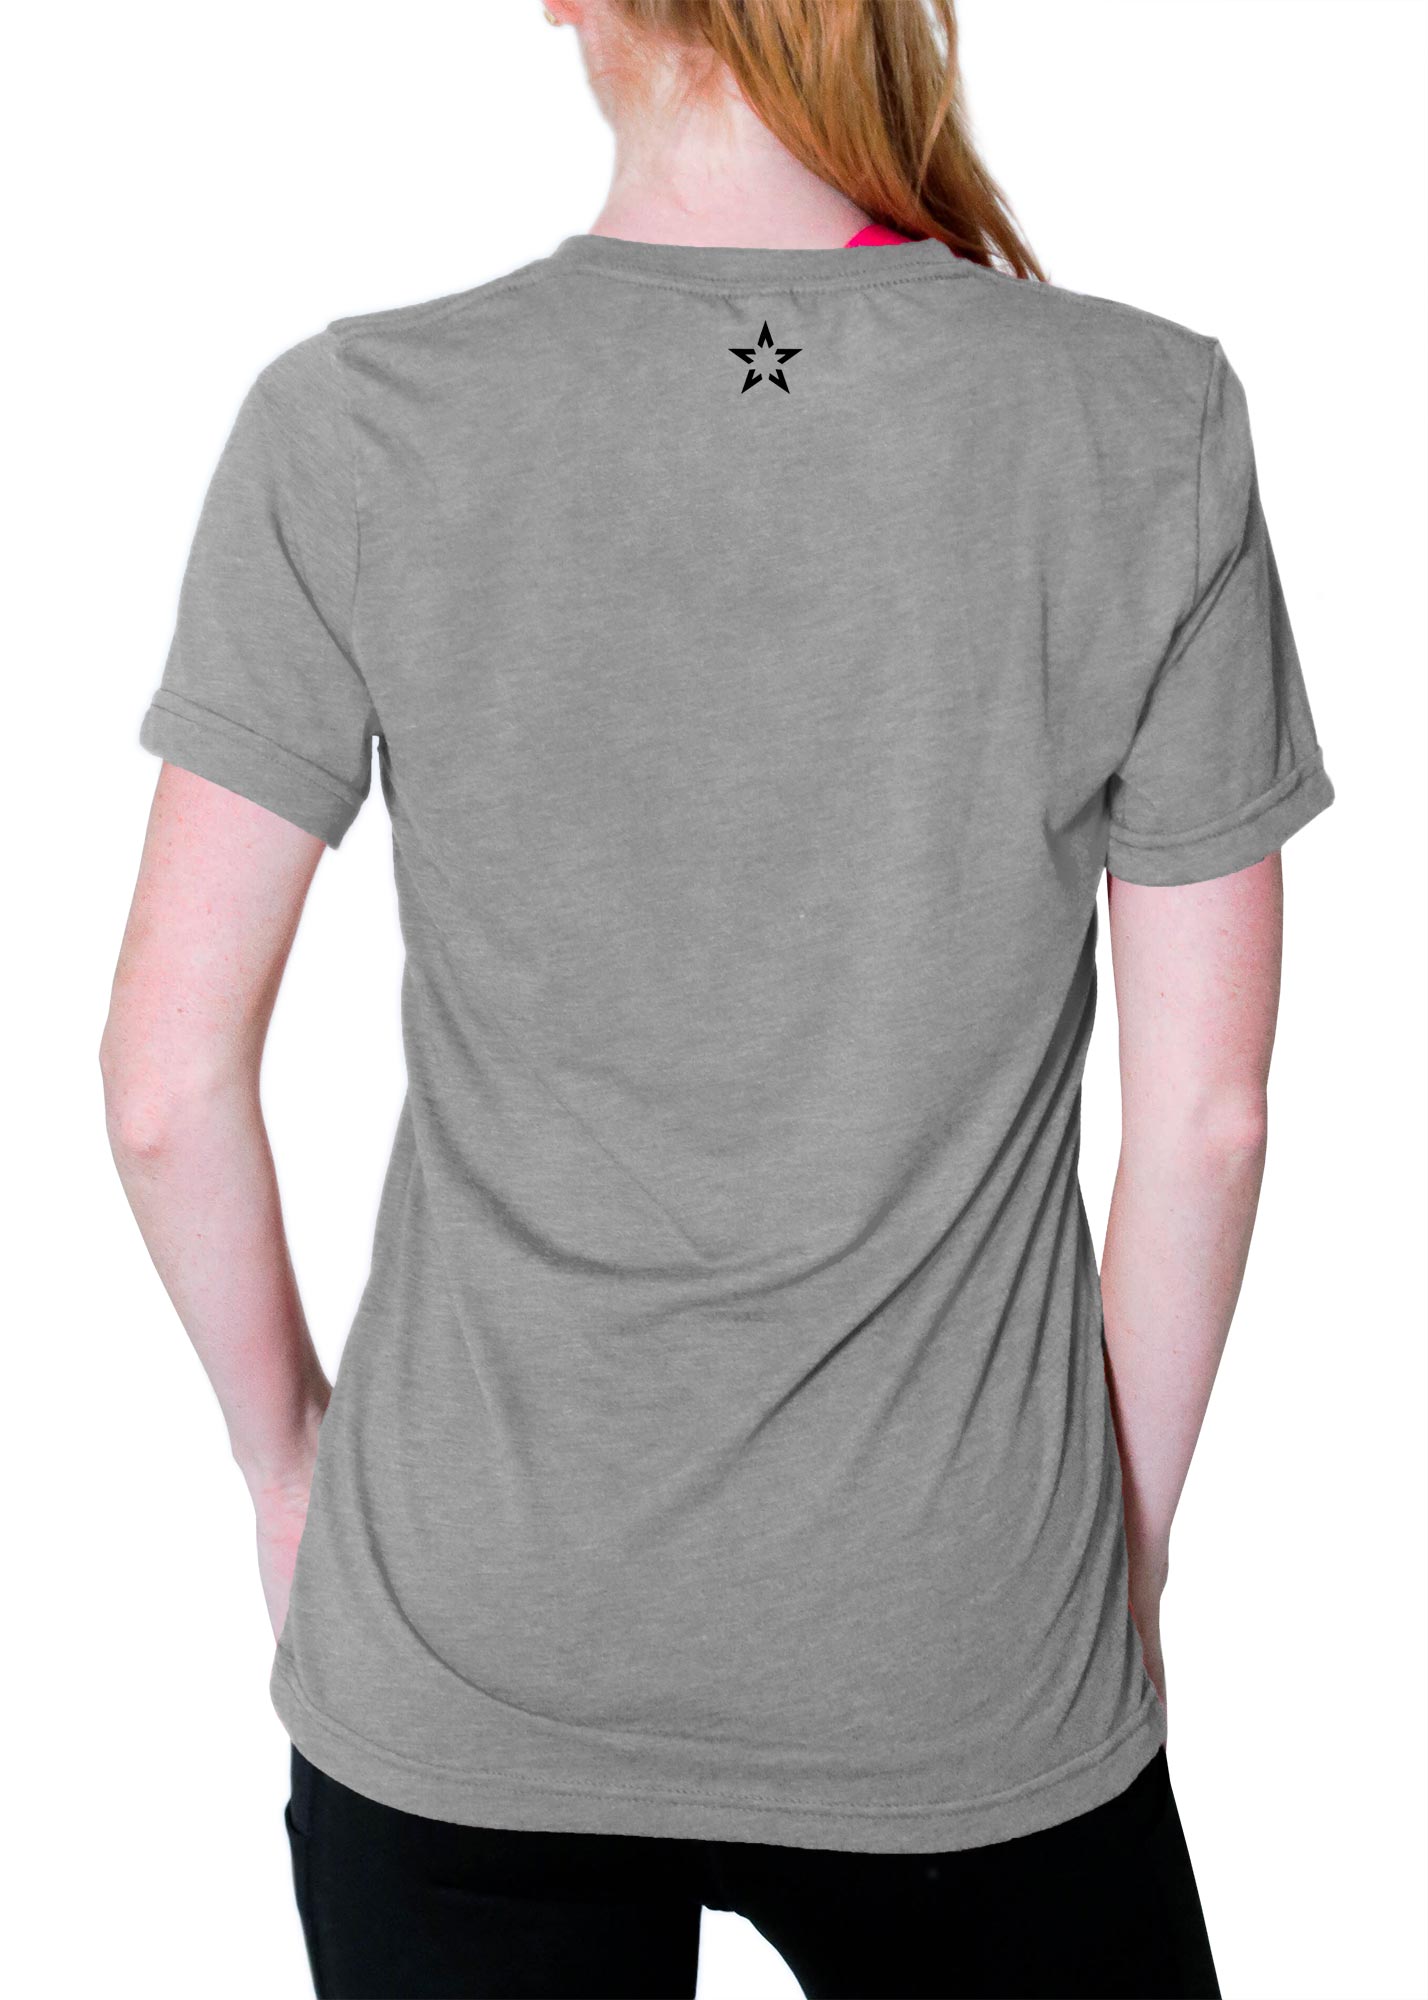 christian tee shirt activewear sports apparel